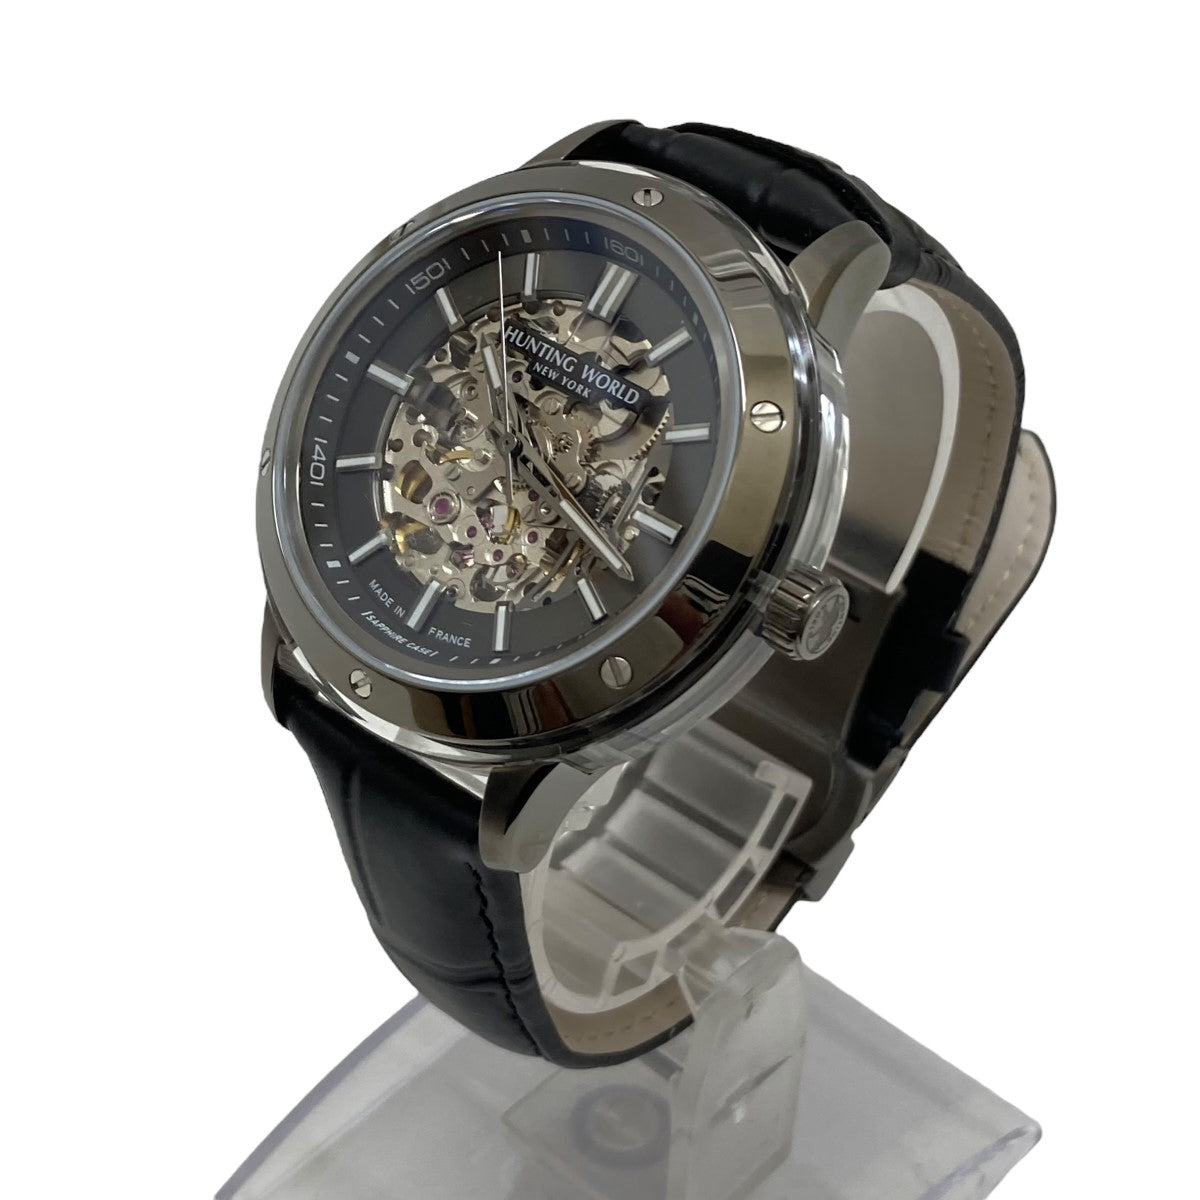 7,840円Hunting World HW030 サファイアケース 自動巻き 腕時計